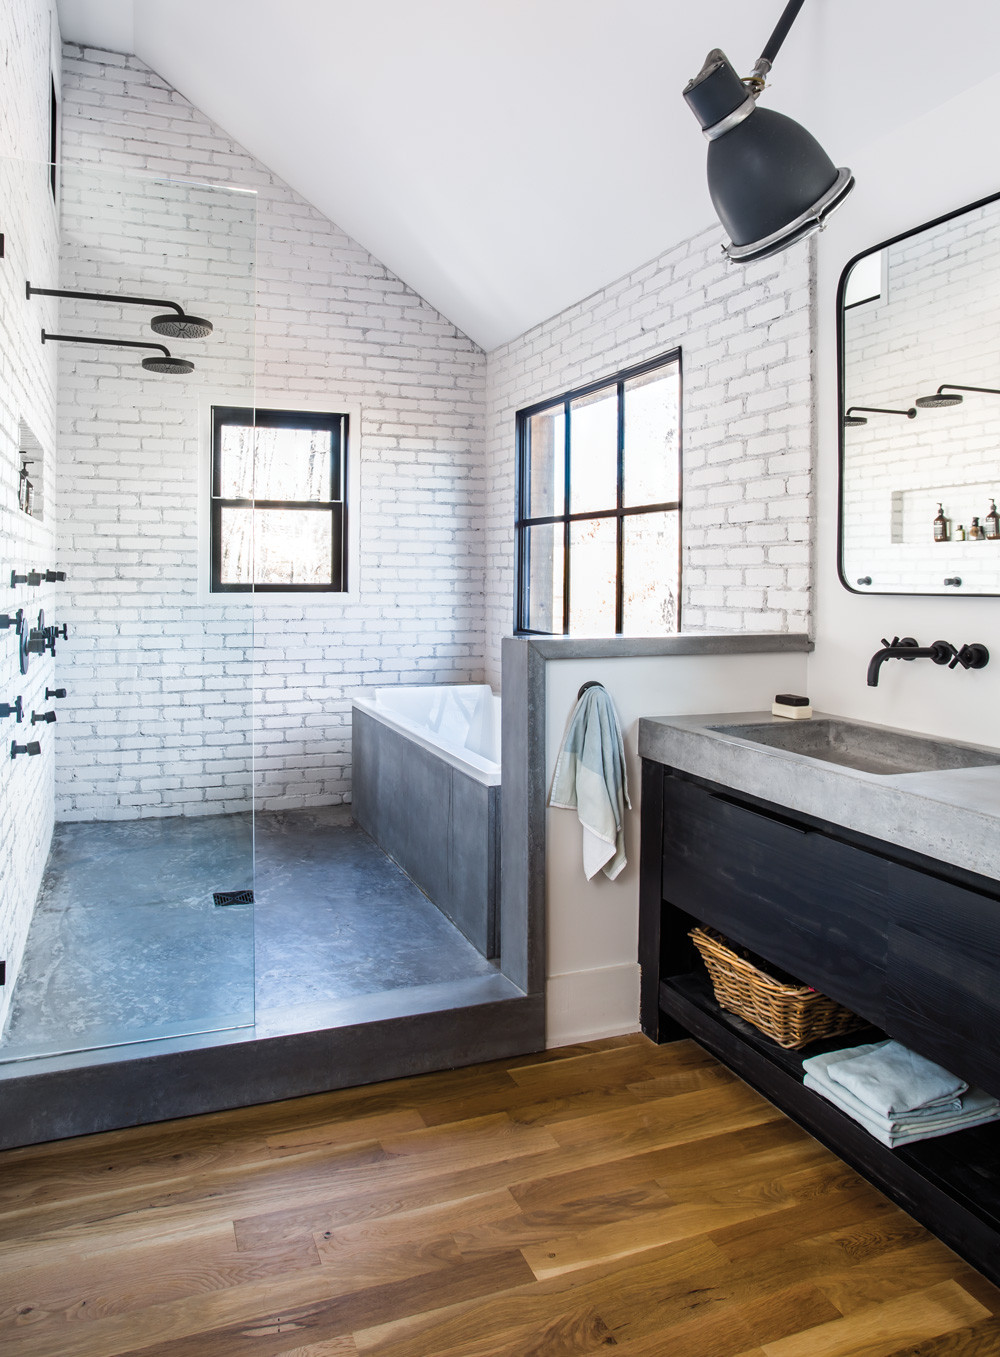 Modern Master Bathroom Ideas
 Room Envy At Serenbe a master bath with a modern